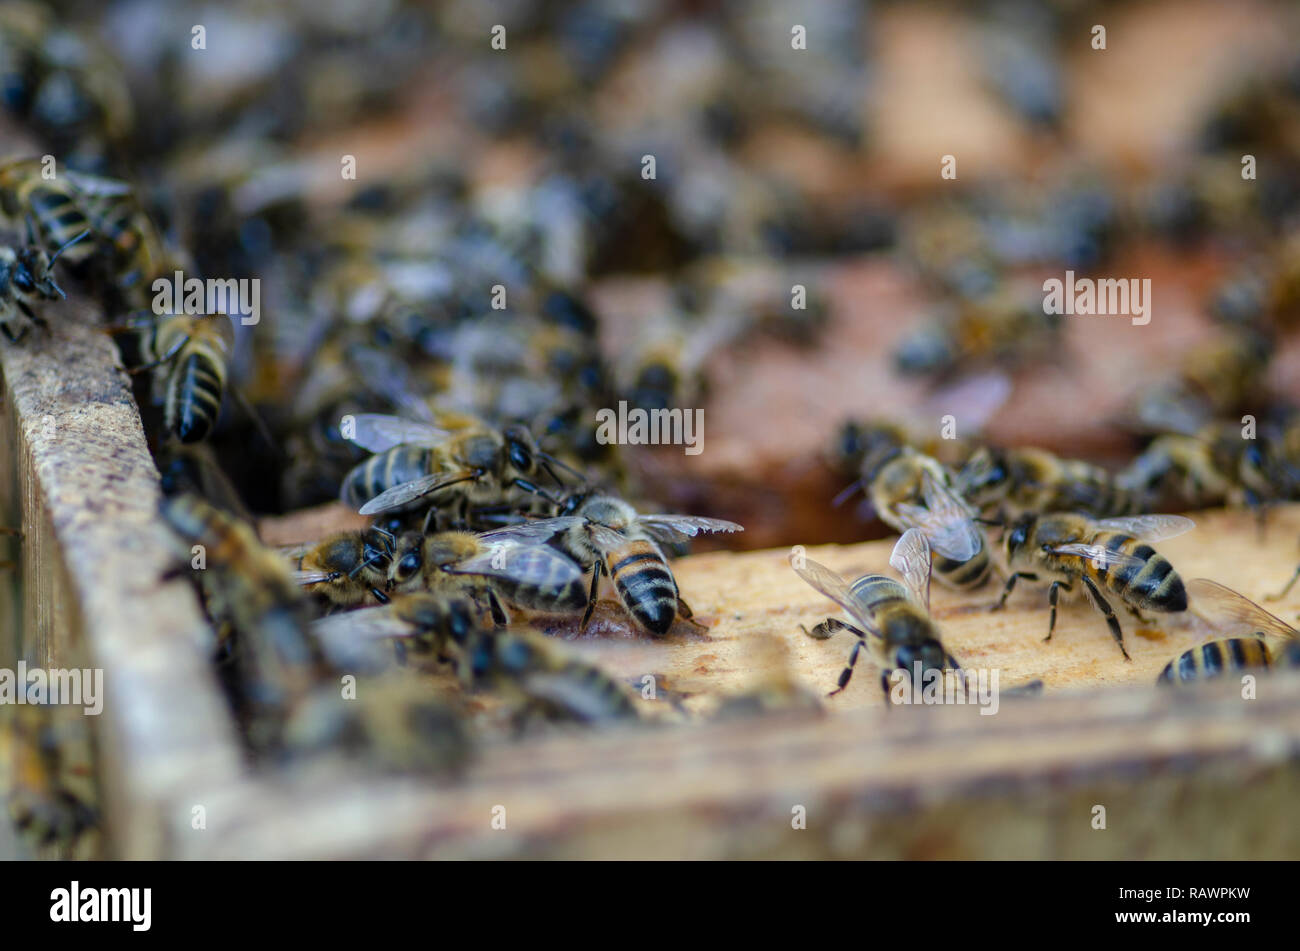 Un primo piano della colonia di api nell'alveare, quando un apicoltore è apertura all'alveare per la mietitura e di raccogliere miele con una profondità di campo ridotta Foto Stock